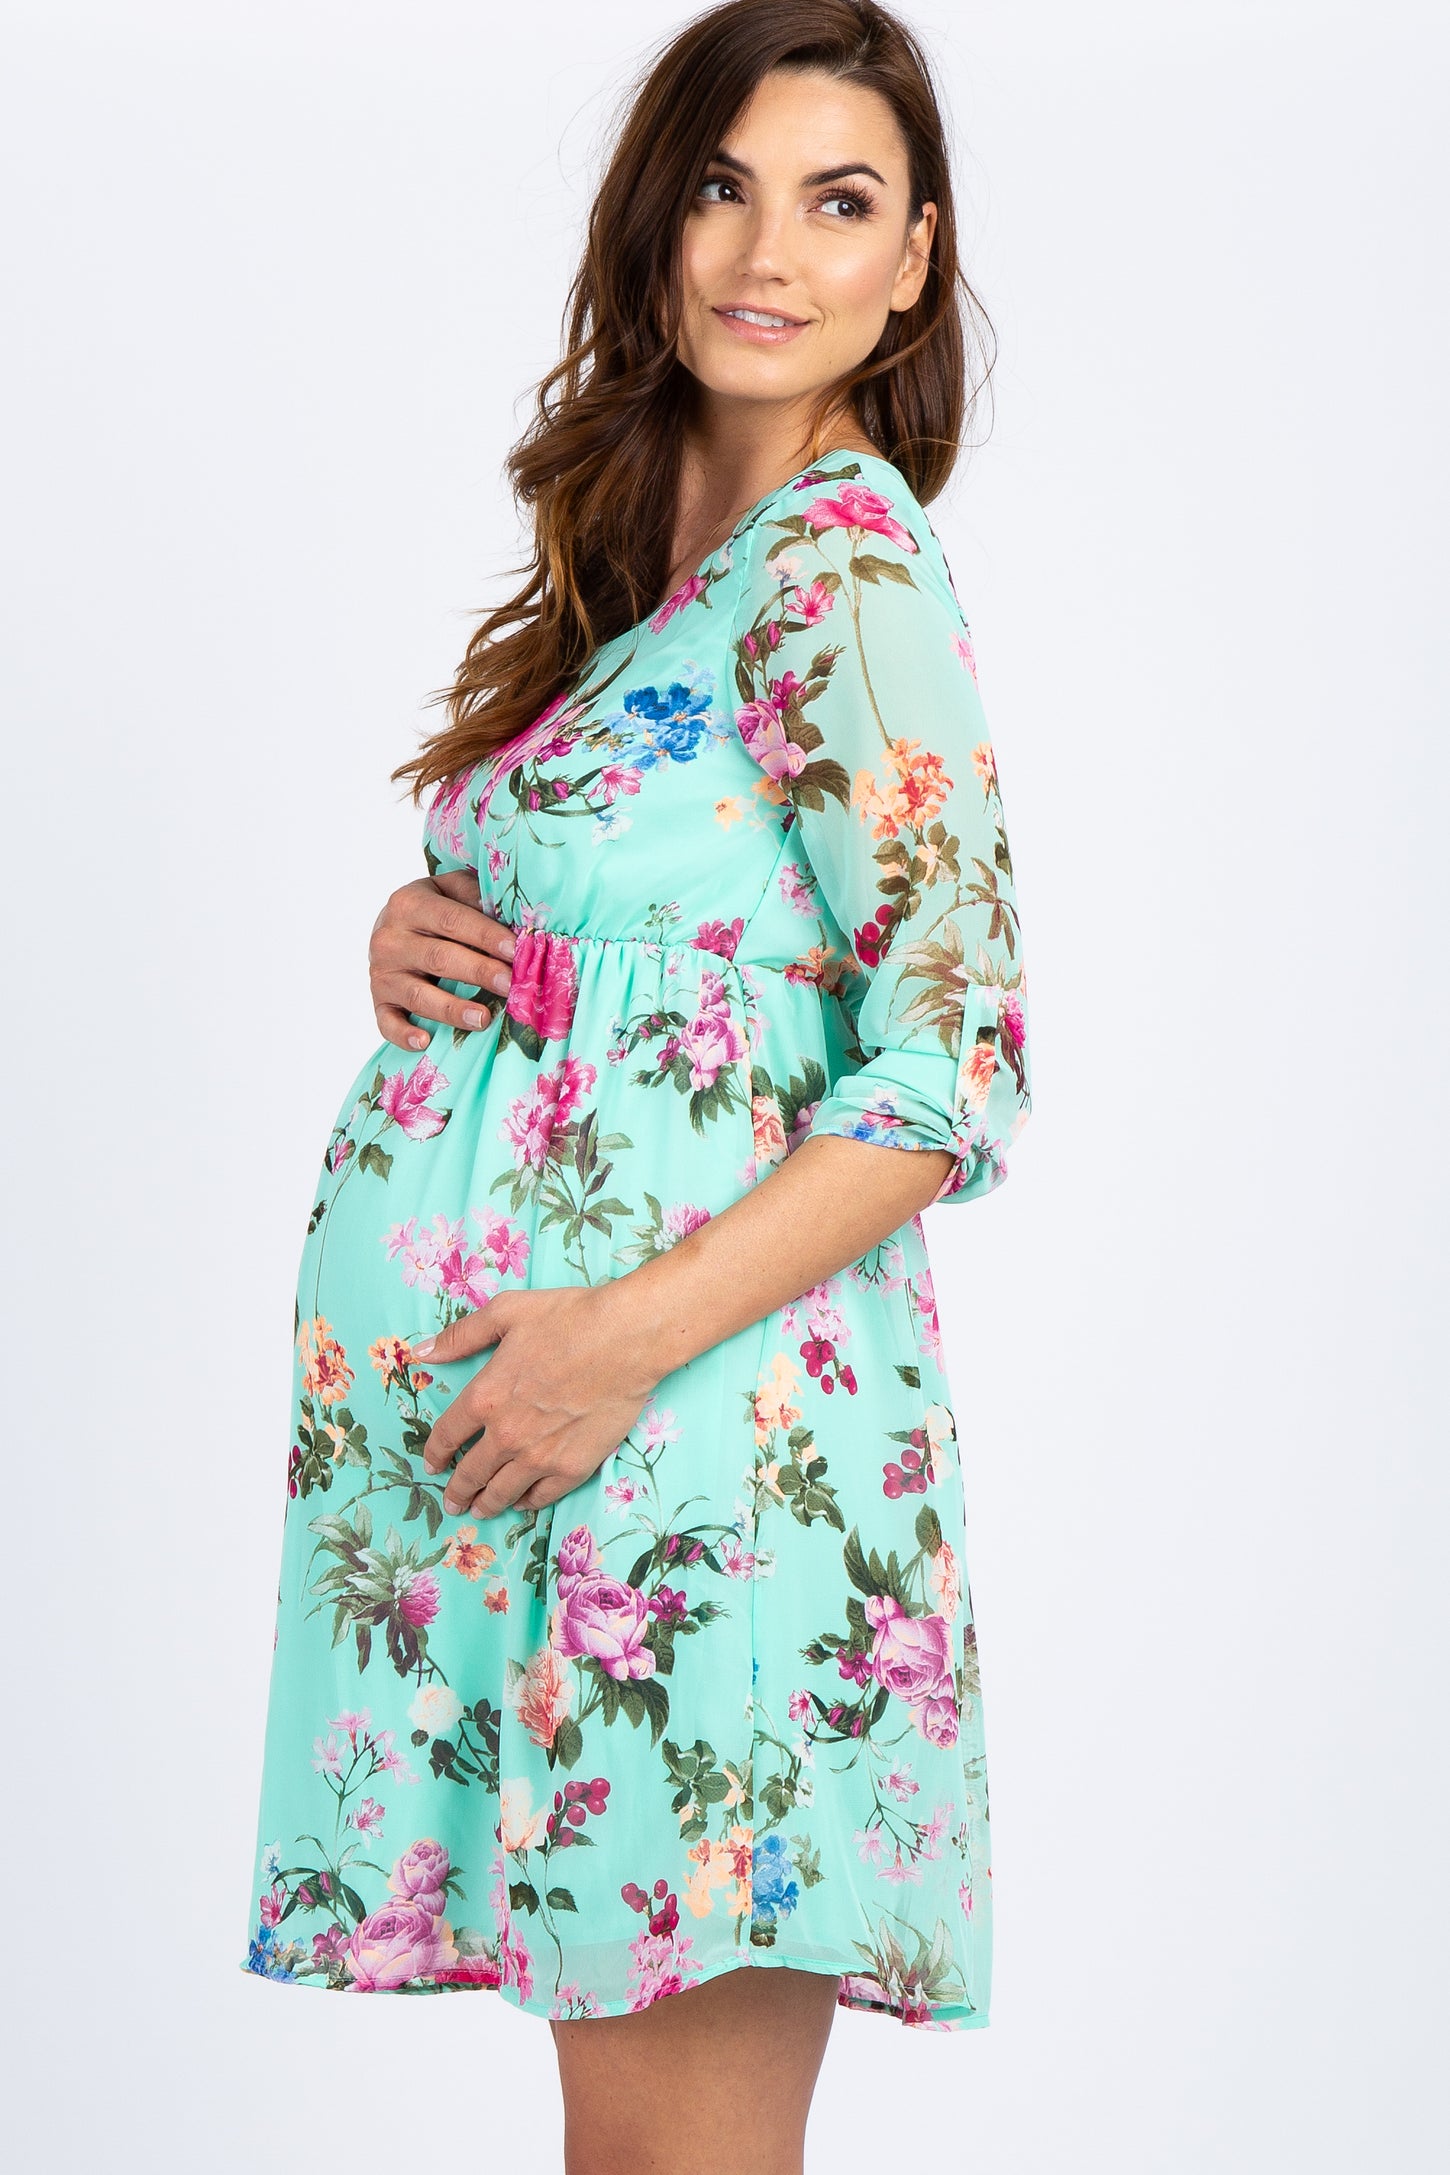 PinkBlush Mint Floral Chiffon Maternity Dress